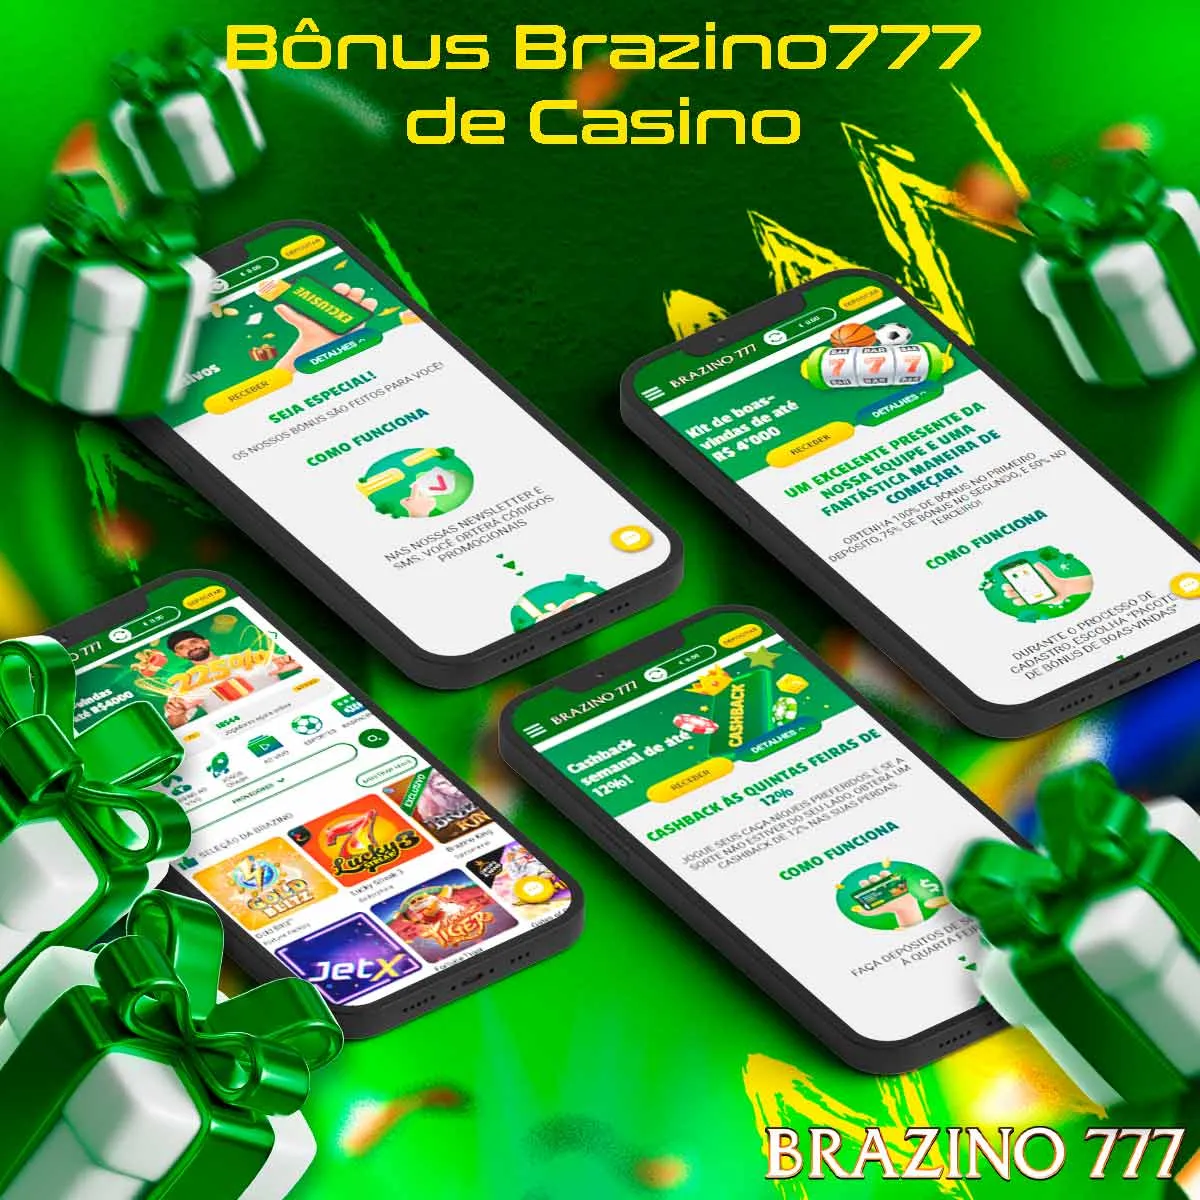 Visão geral do bônus de boas-vindas do cassino da casa de apostas Brazino777 no Brasil